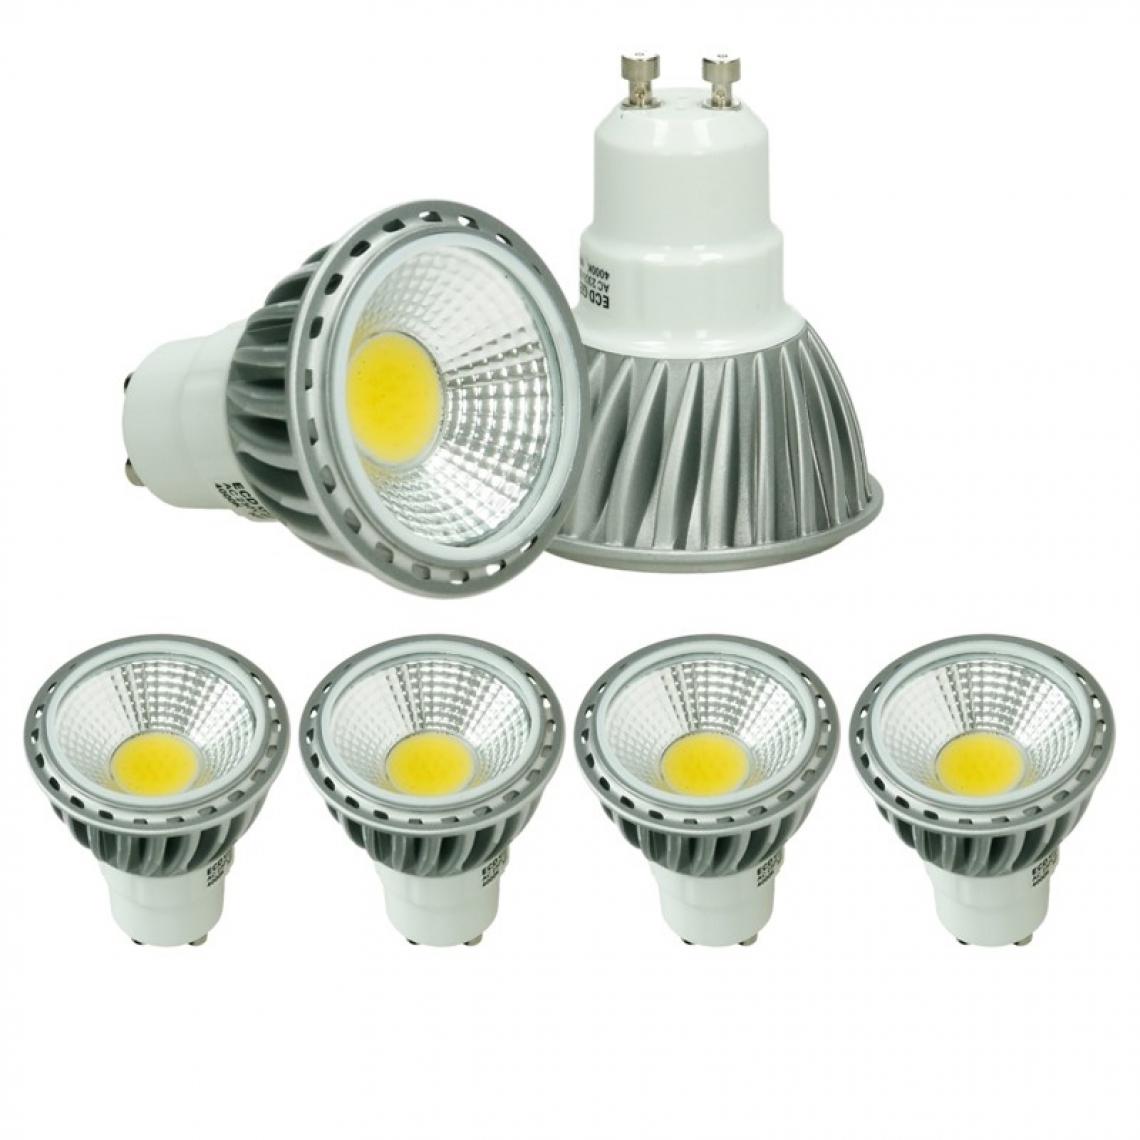 Ecd Germany - ECD Germany 4 x Spot LED 6W GU10 - Spot halogène 30W - 220-240V - Ampoules spot - LED Plafonnier 386 Lumens - Angle de faisceau 60 °- Blanc chaud - 2800K - Ampoules LED